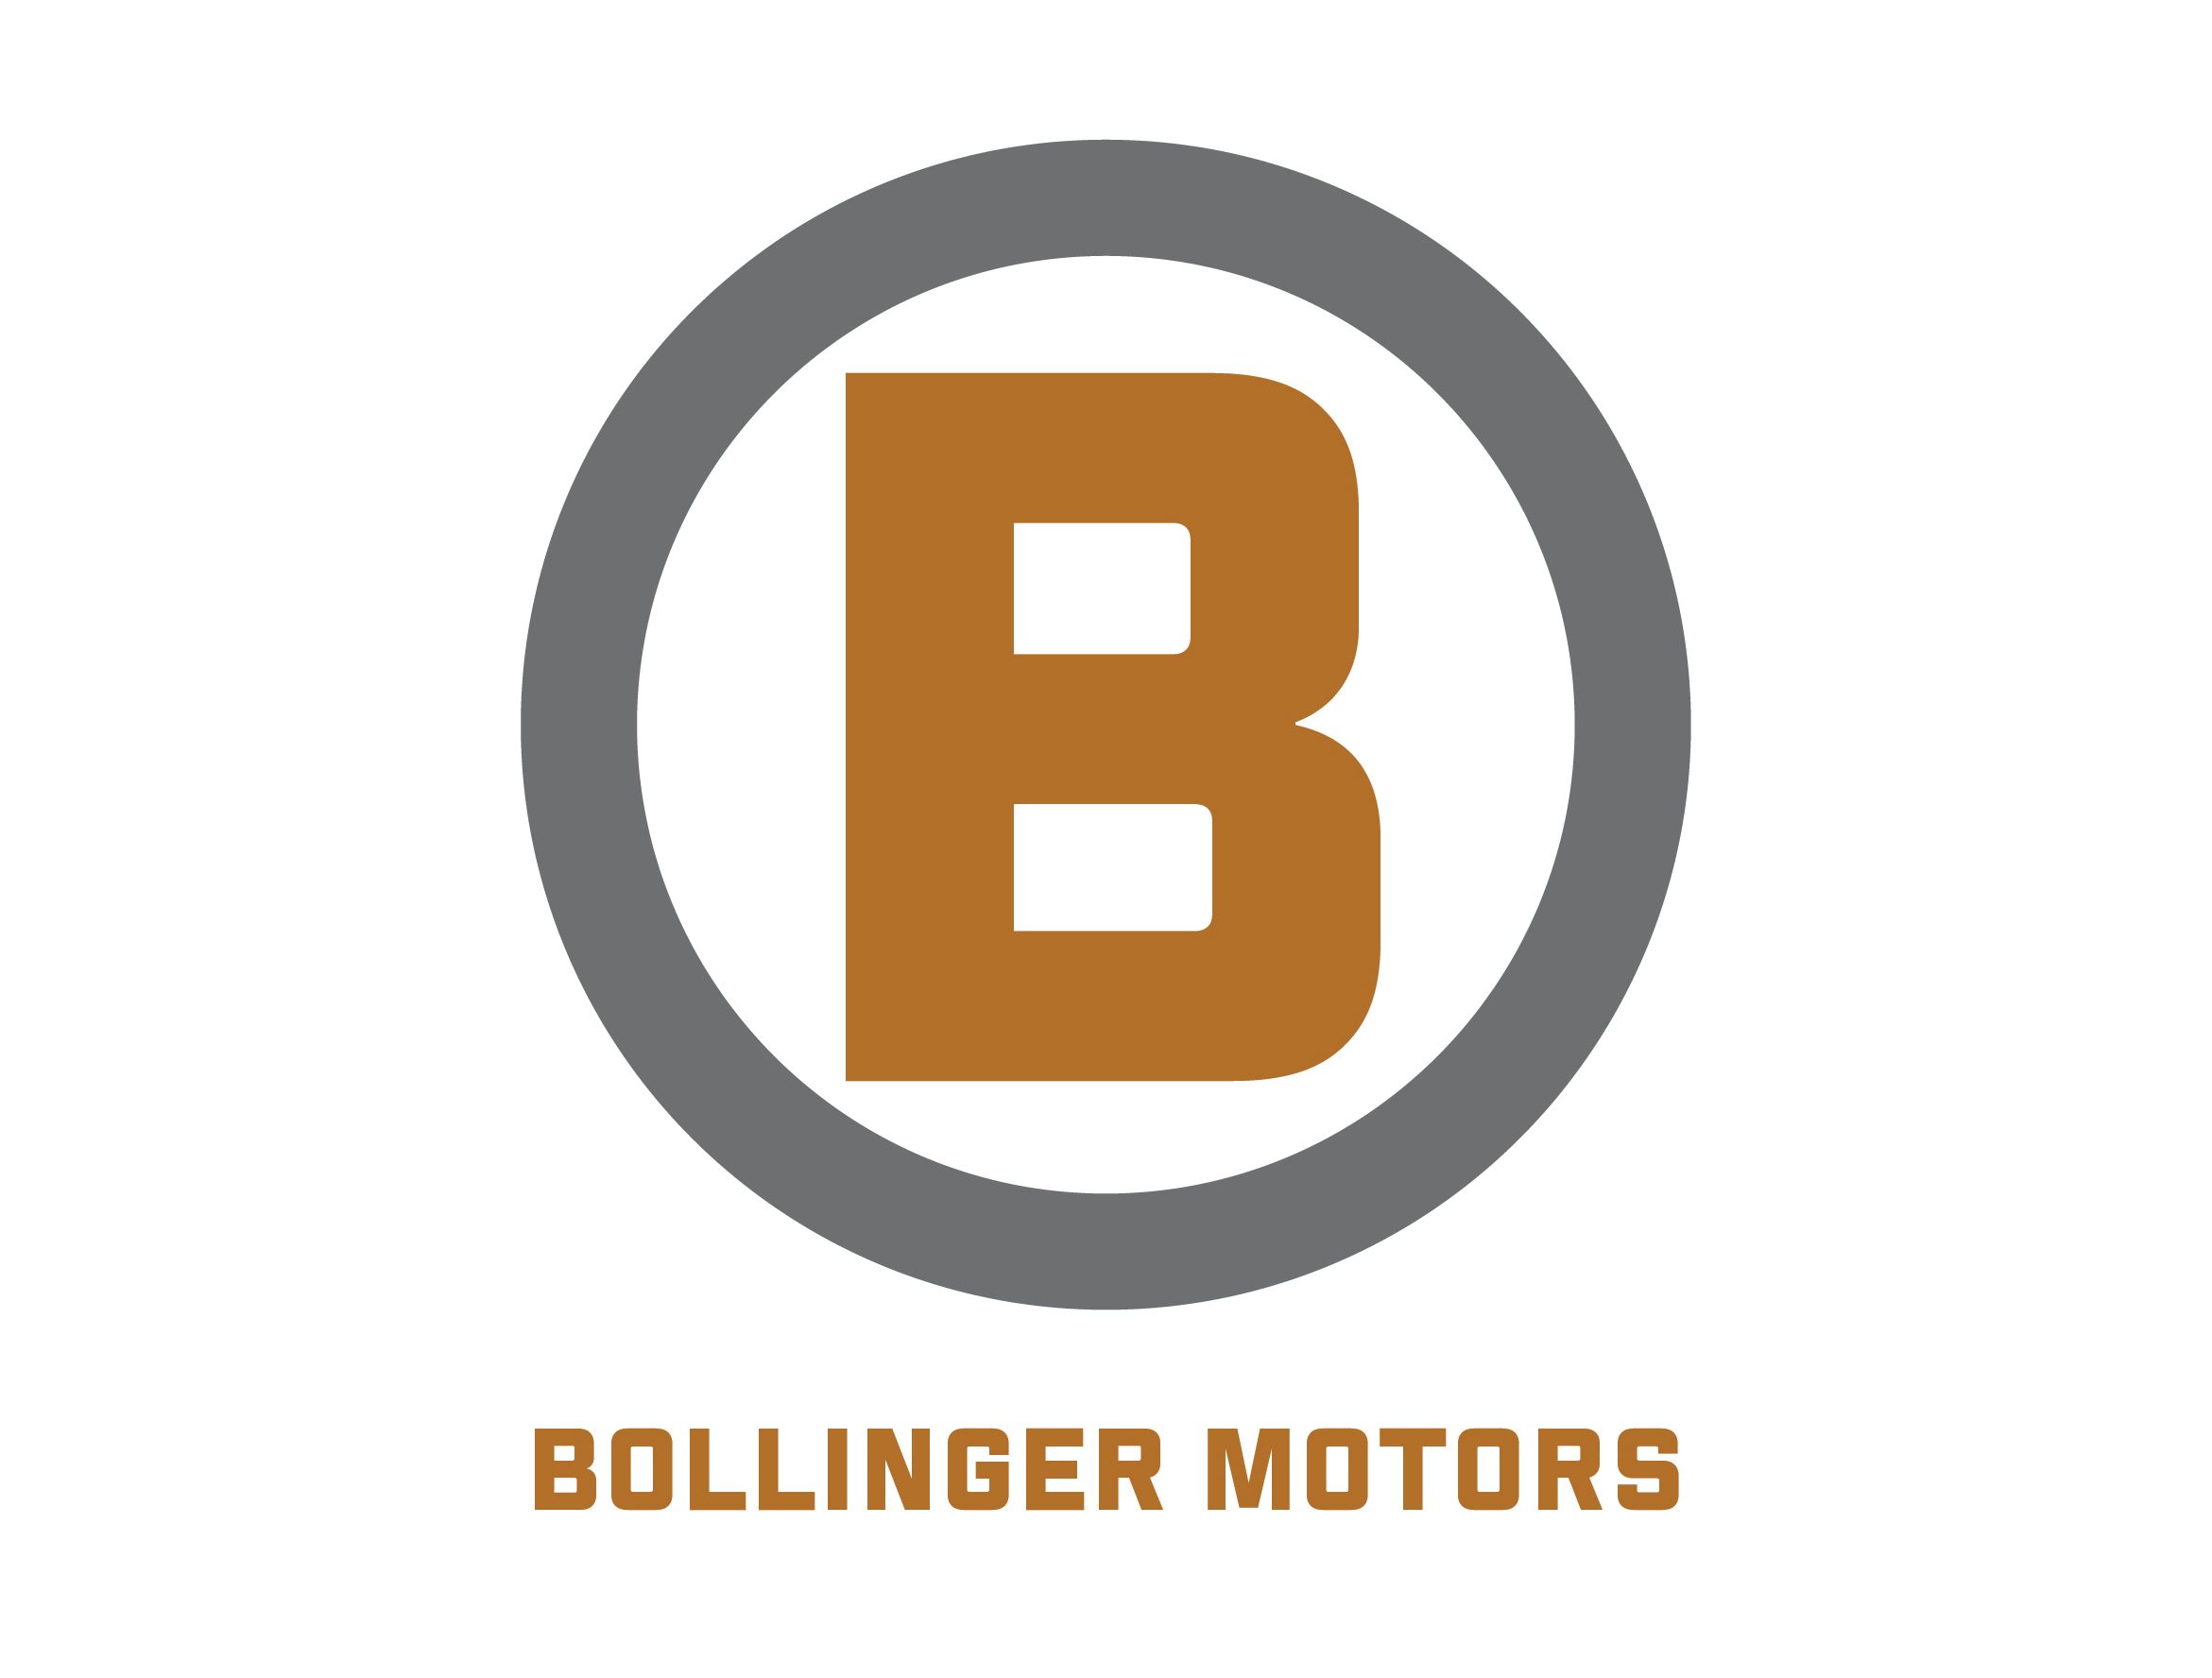 Bollinger